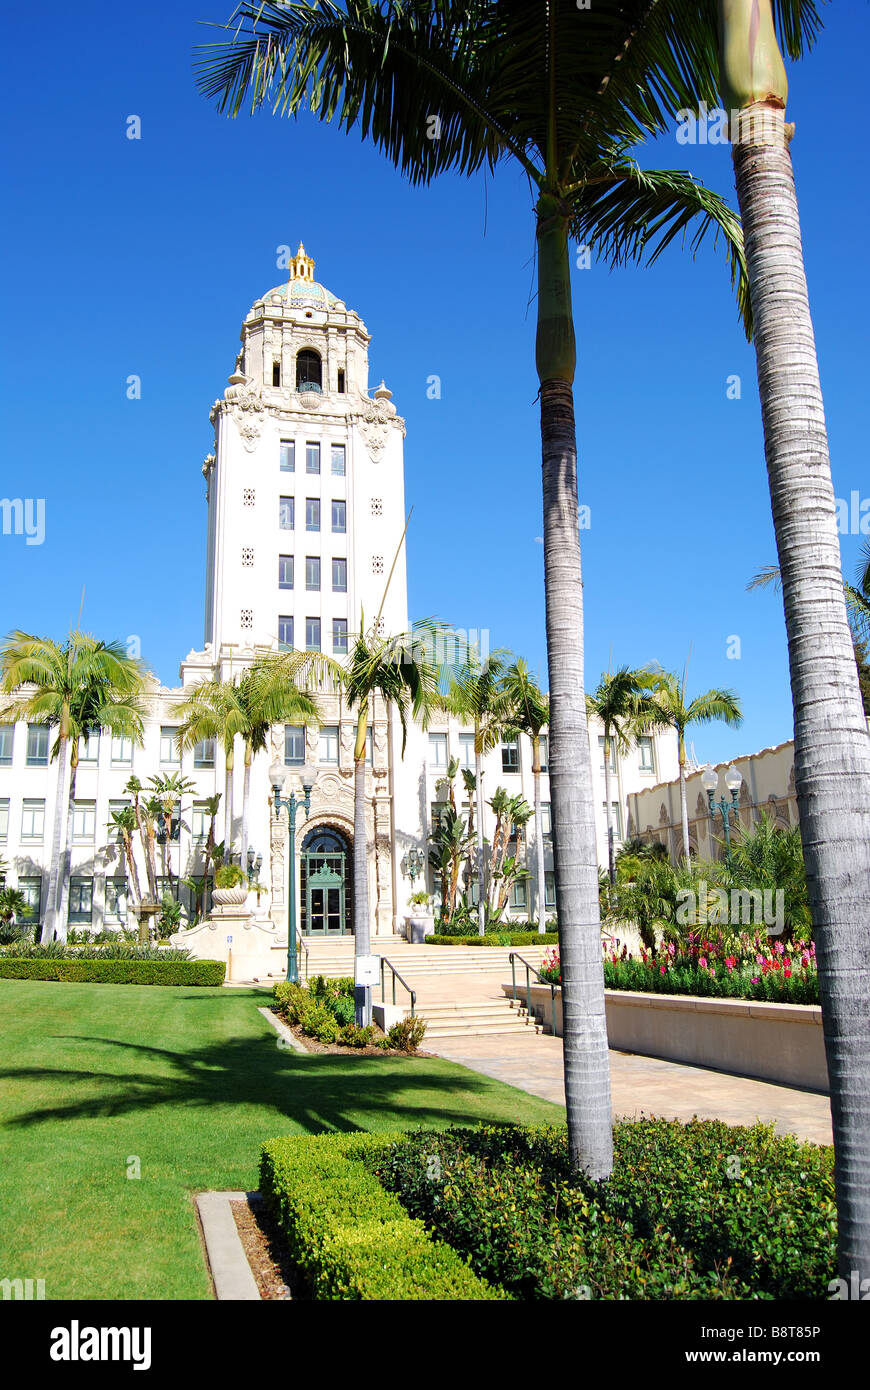 Los Angeles City Hall, N Rexford Drive, Beverly Hills, Los Angeles, Californie, États-Unis d'Amérique Banque D'Images